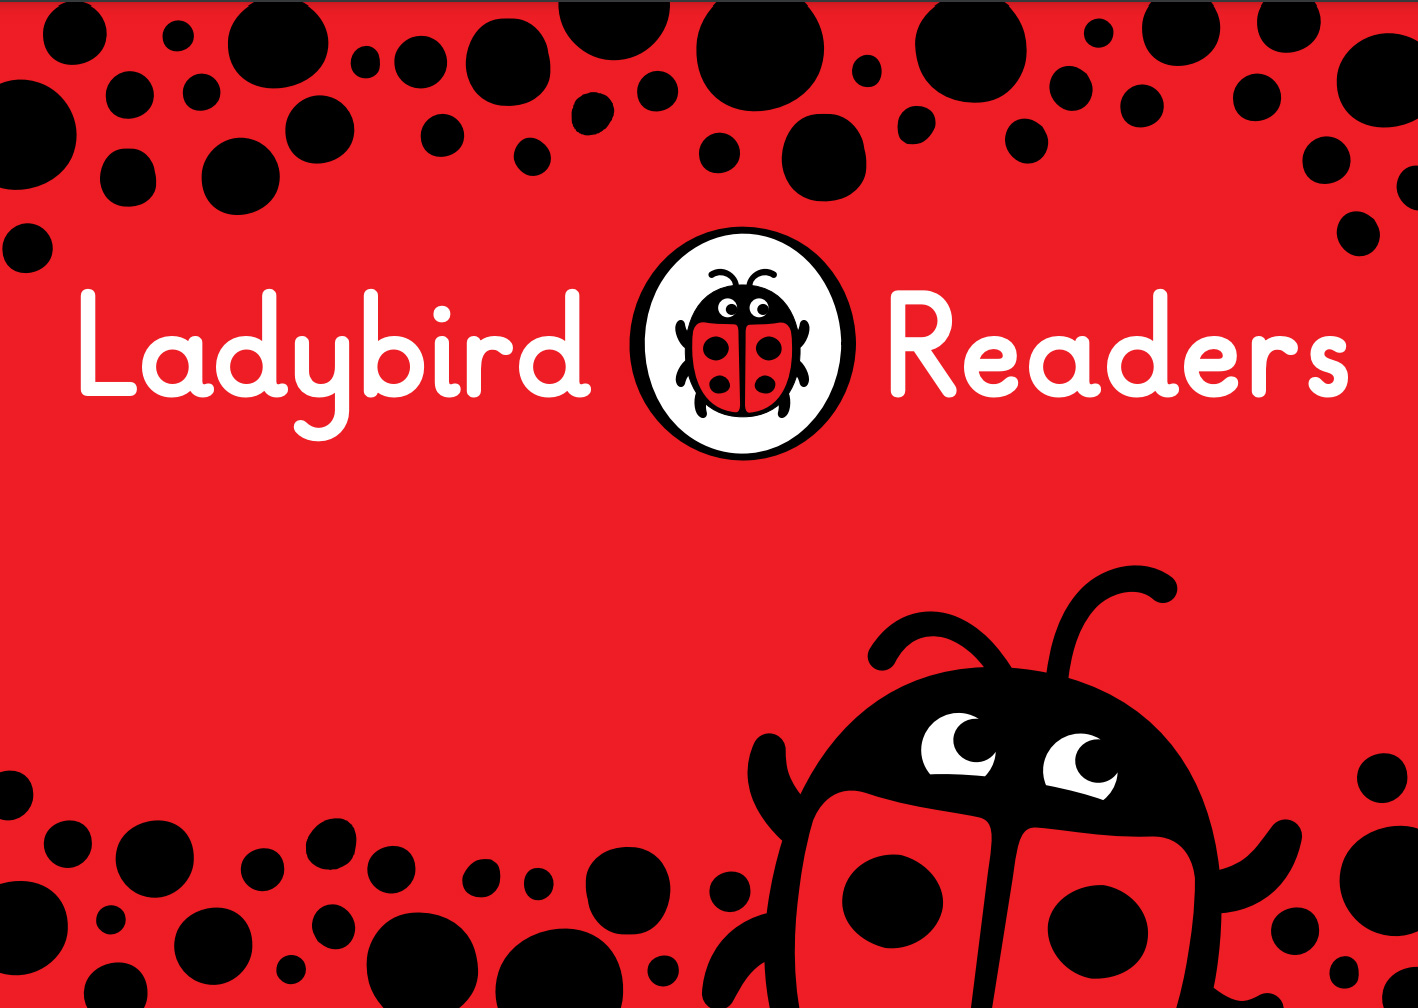 Ladybird Readers